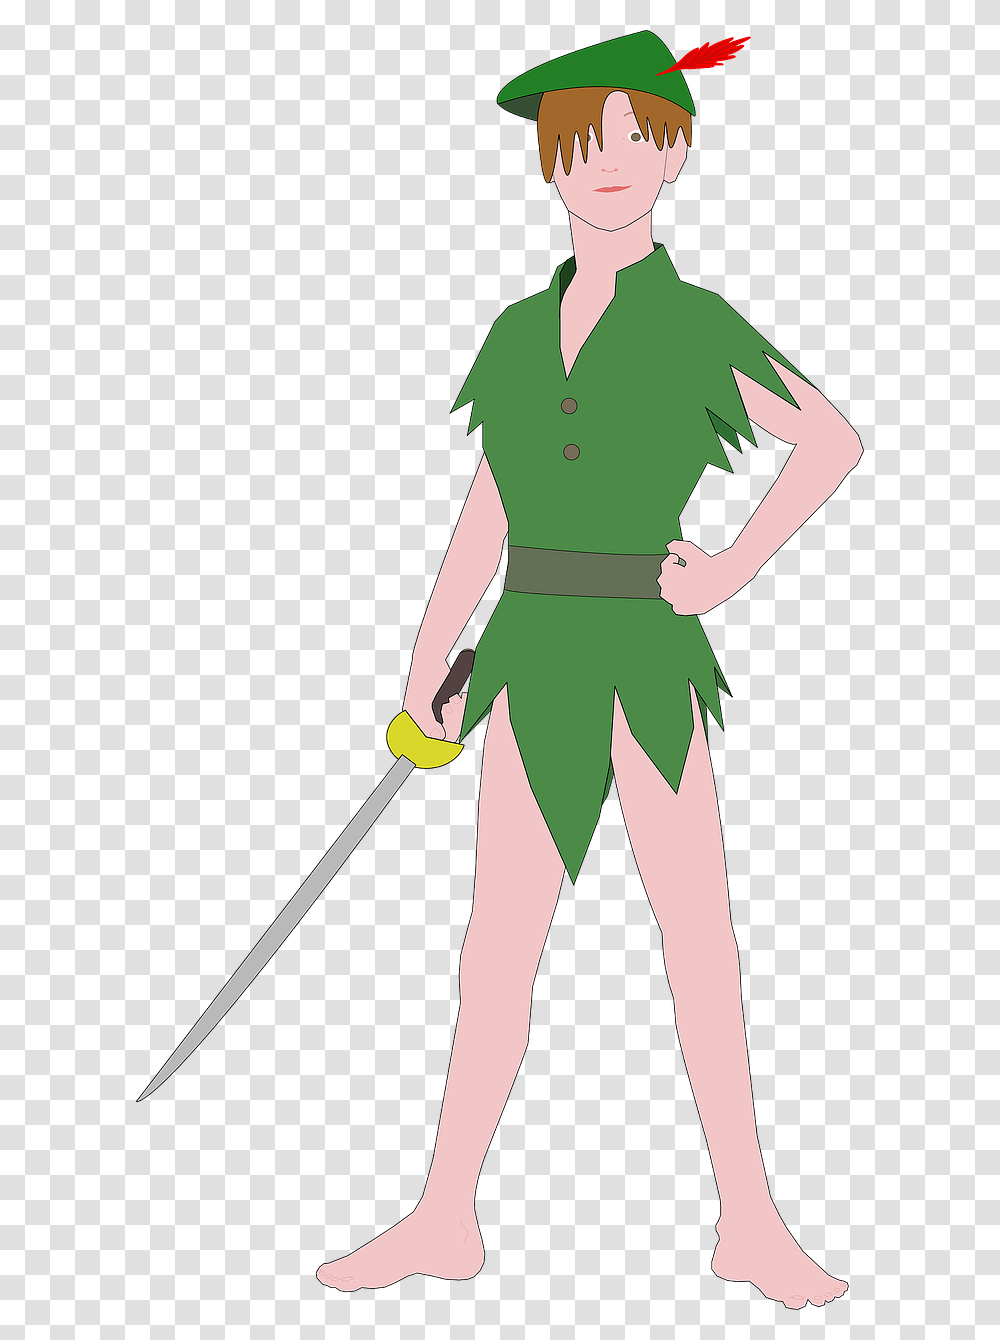 Peter Pan Cartoon Art, Sleeve, Apparel, Costume Transparent Png